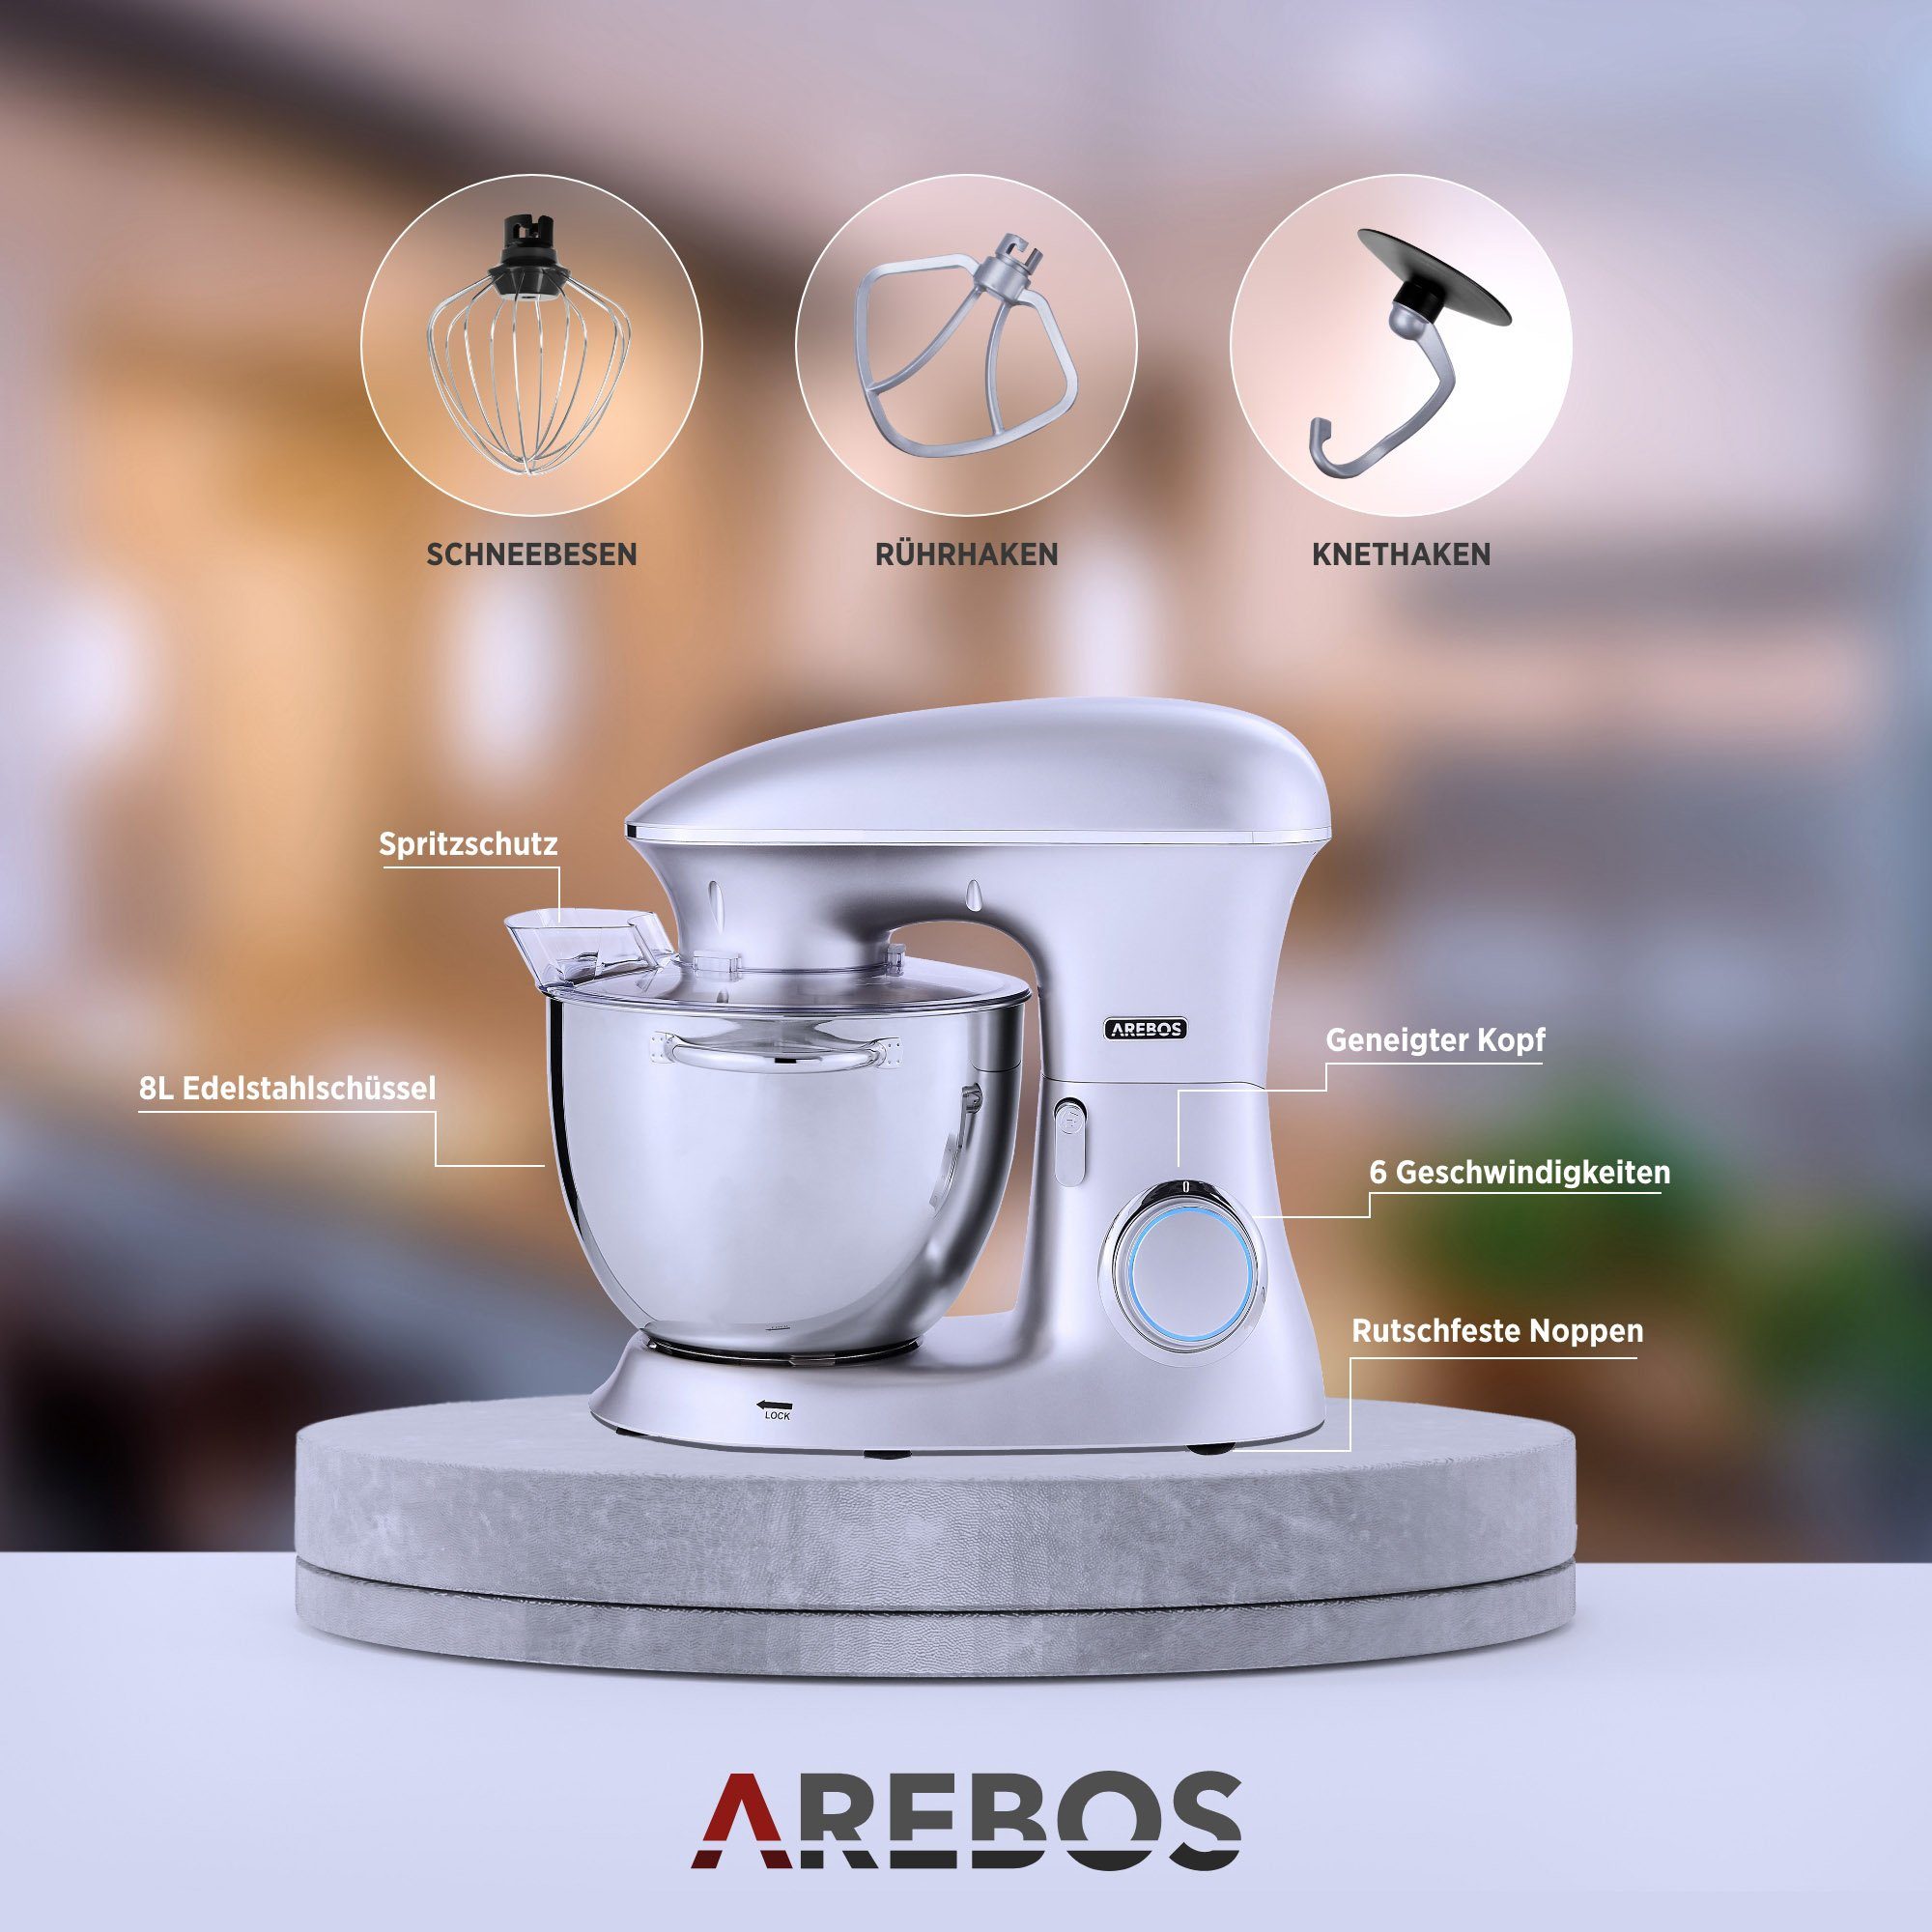 Arebos Küchenmaschine Edelstahl-Rührschüssel, 6 Geschwindigkeiten, W, l 1500 8,00 Schüssel silber